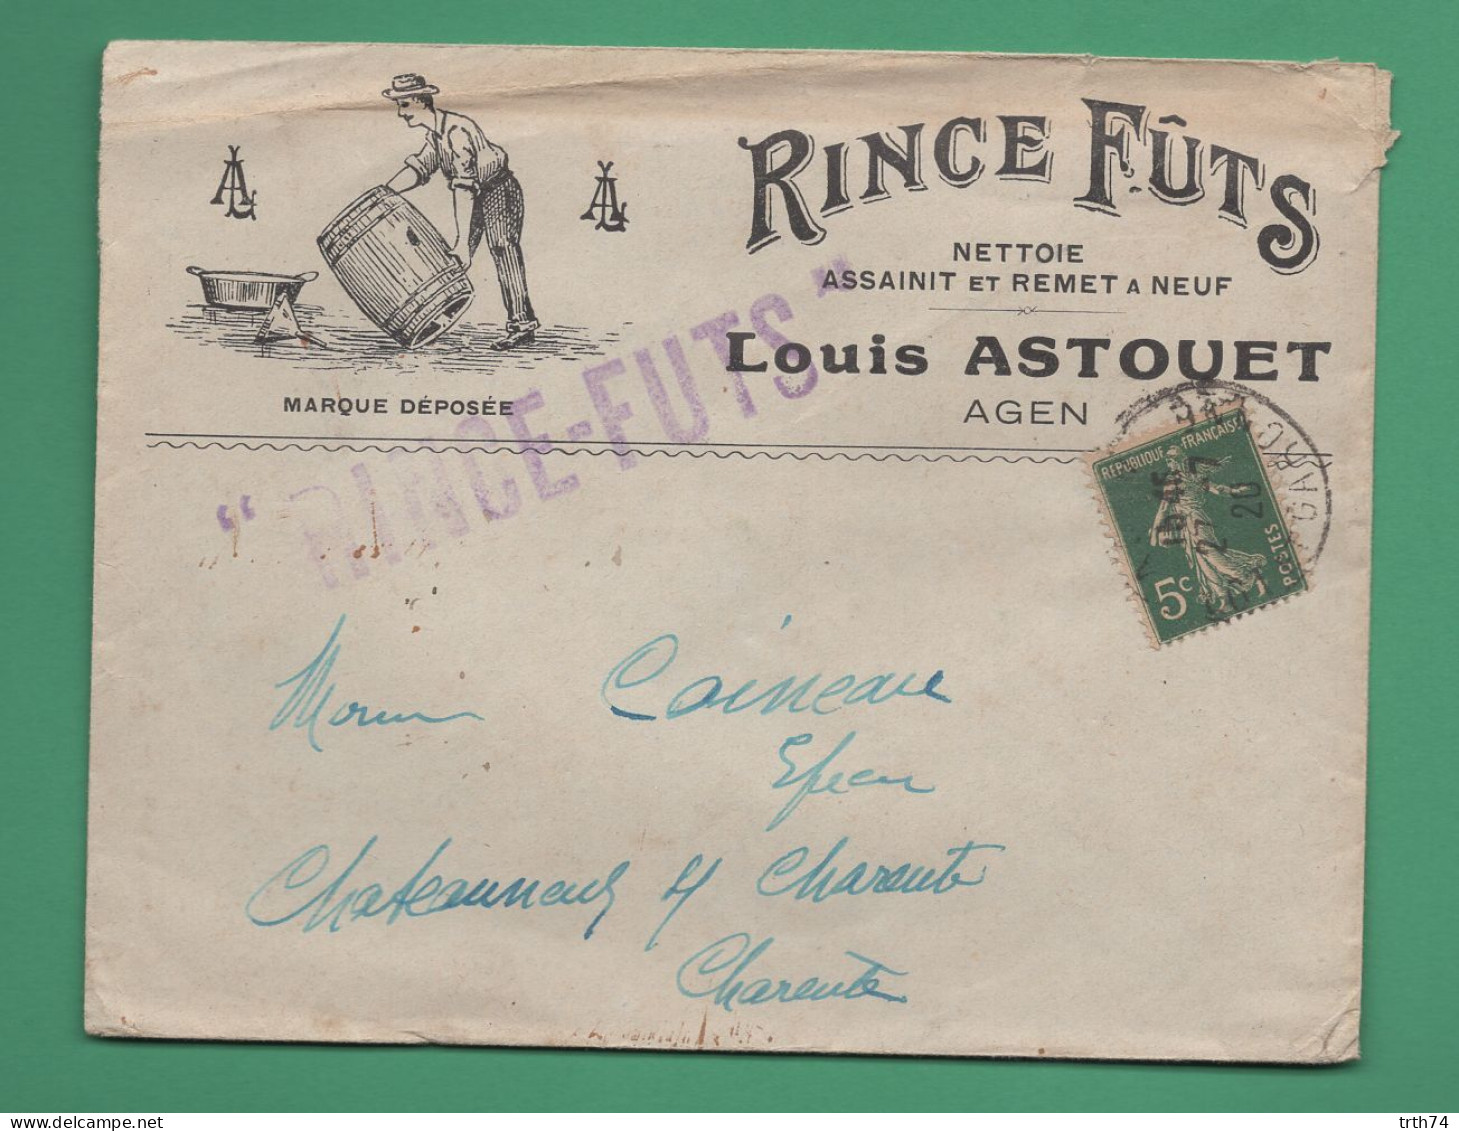 47 Agen Astouet Louis Rince Futs Nettoie Assainit ( Tonneau, Barrique ) Enveloppe Destination Châteauneuf Charente 1920 - Agriculture